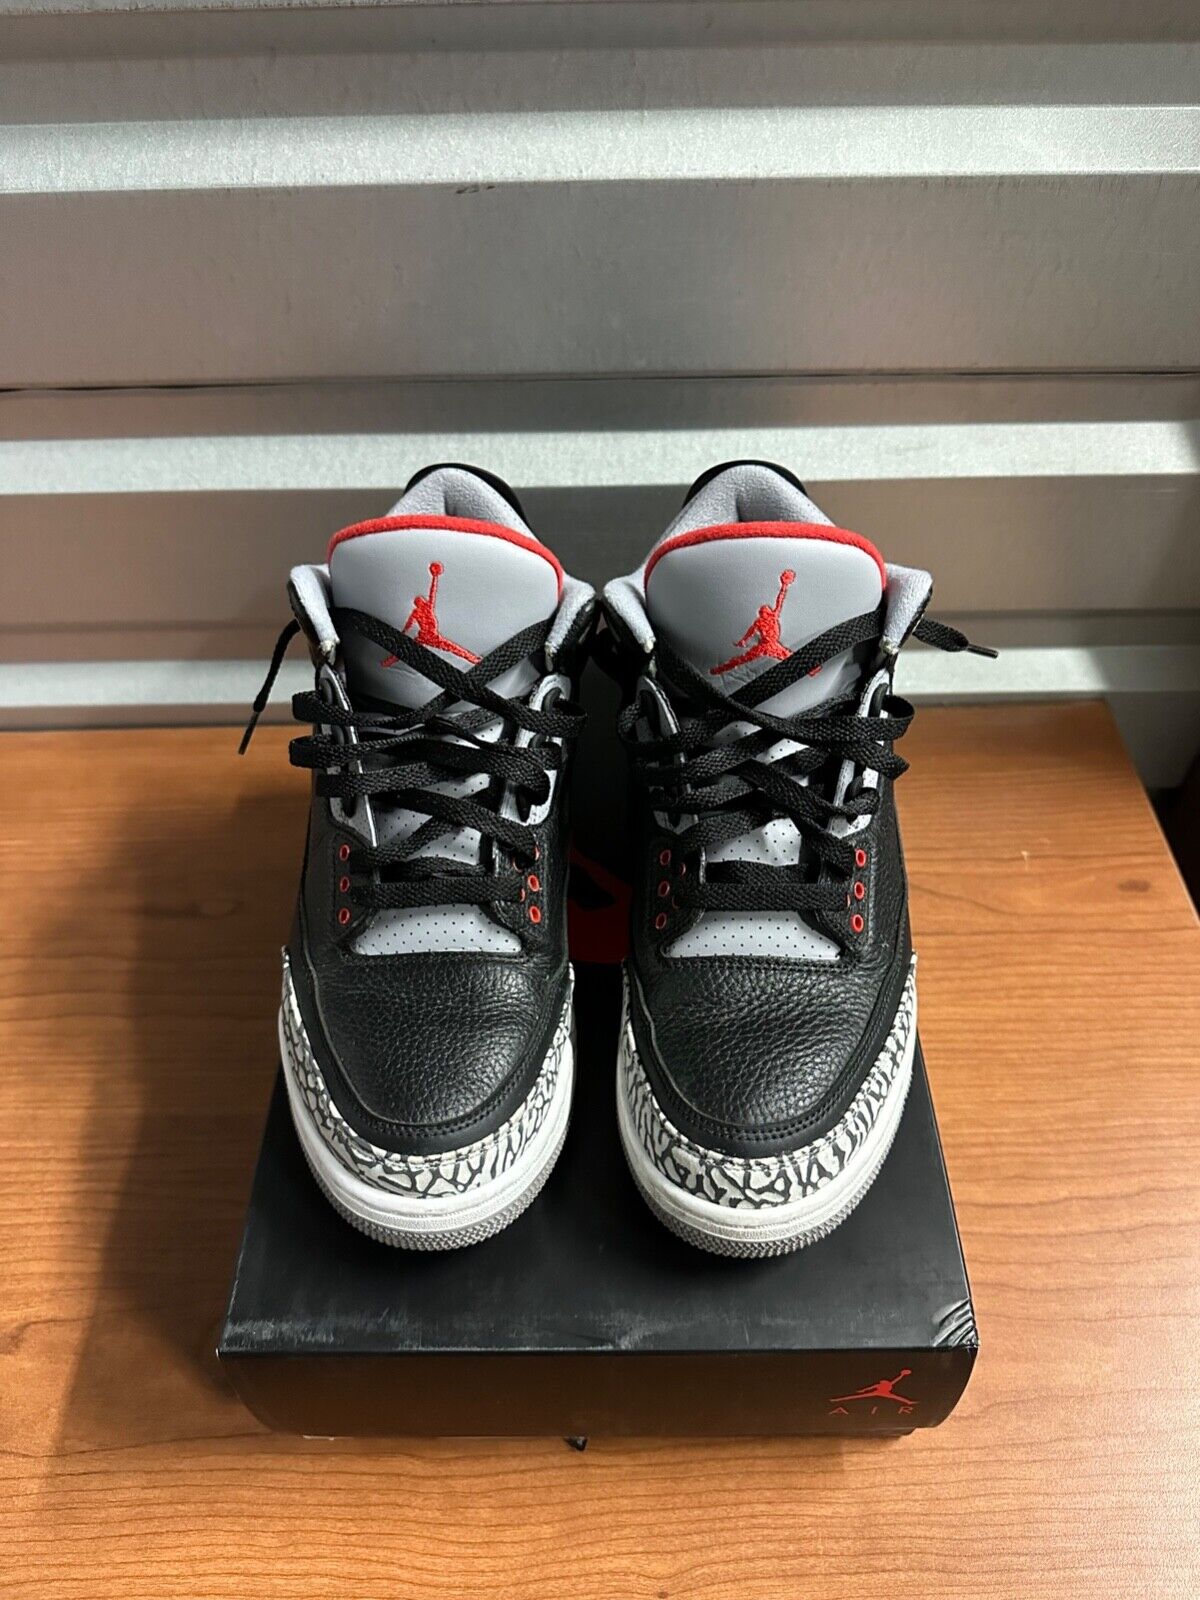 Jordan 3 "Black Cement" 2018